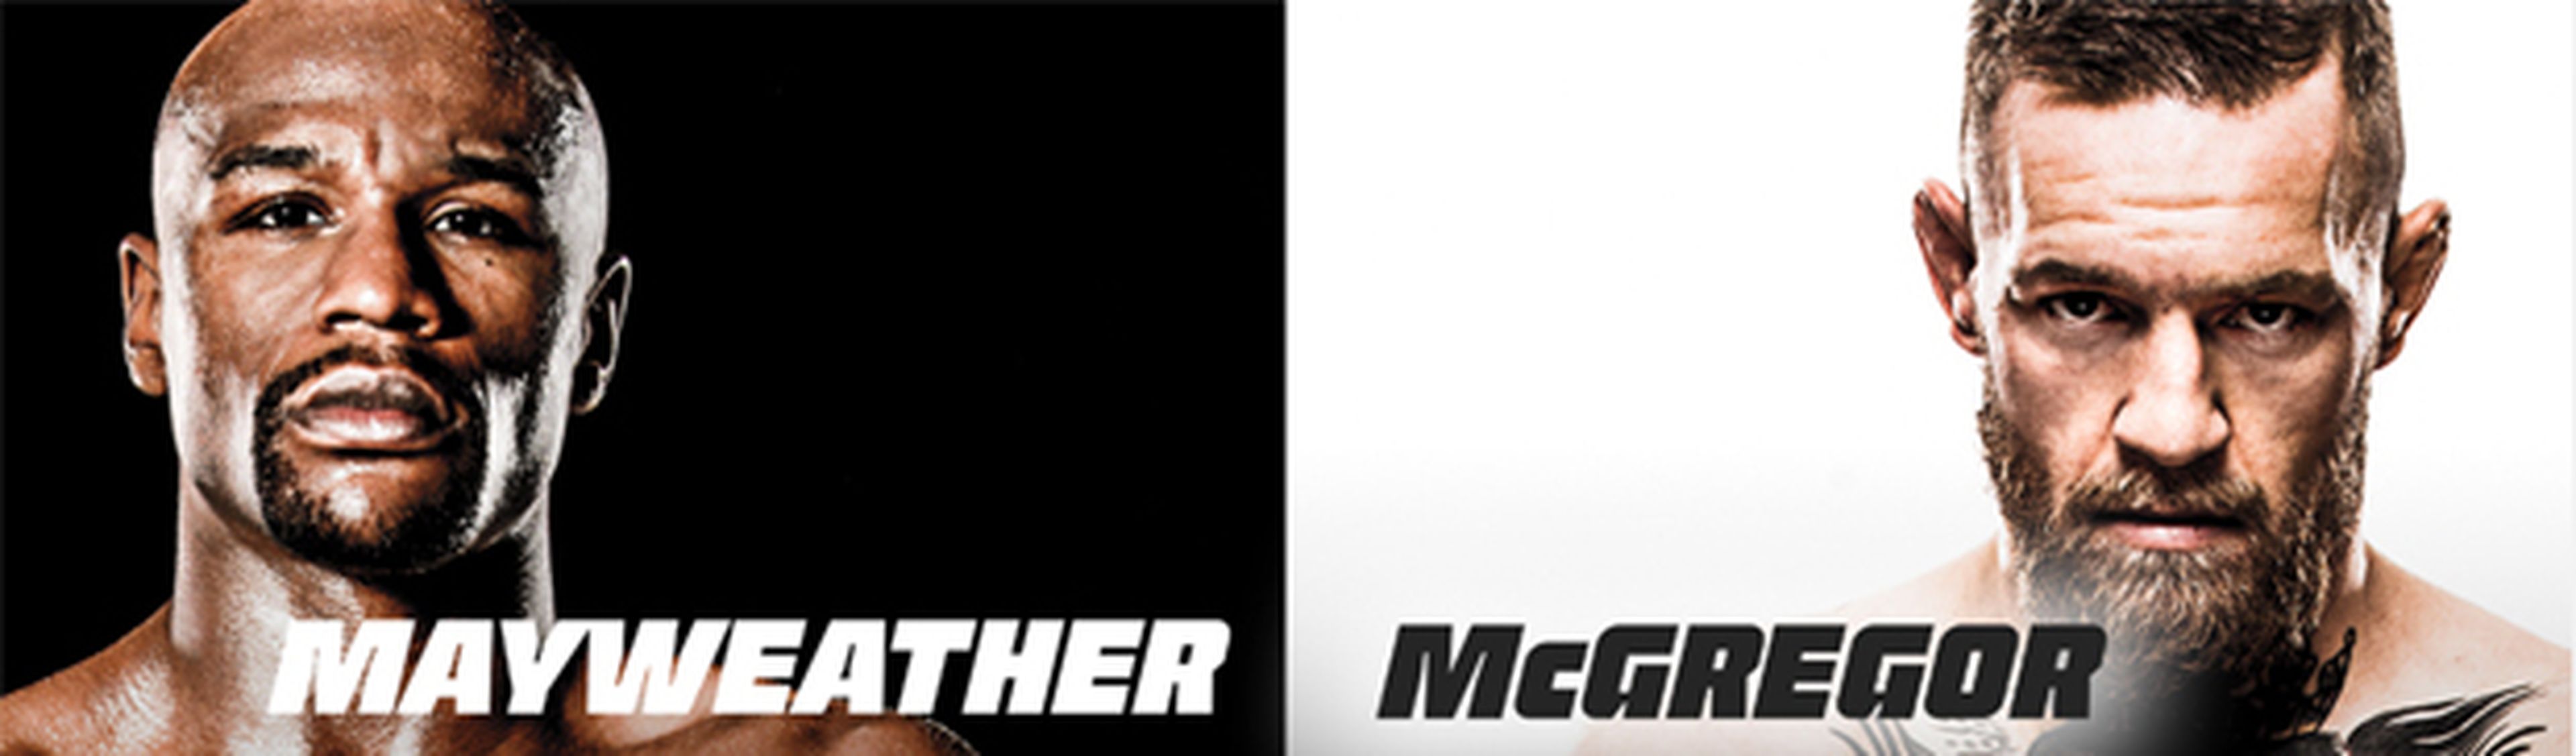 Mayweather vs Mcgregor online